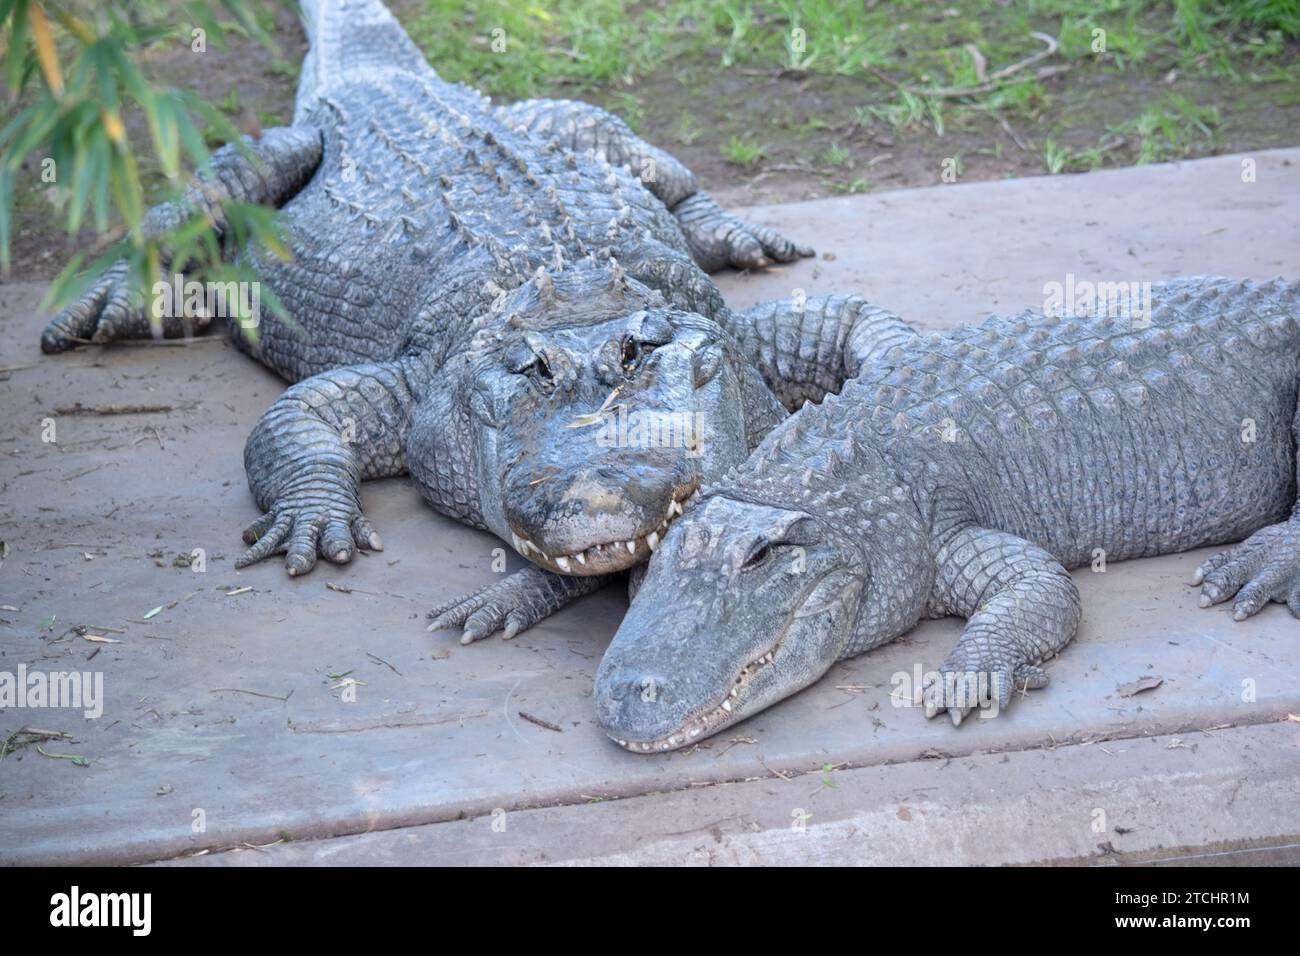 Les alligators ont un long museau arrondi qui a des narines orientées vers le haut à la fin Banque D'Images